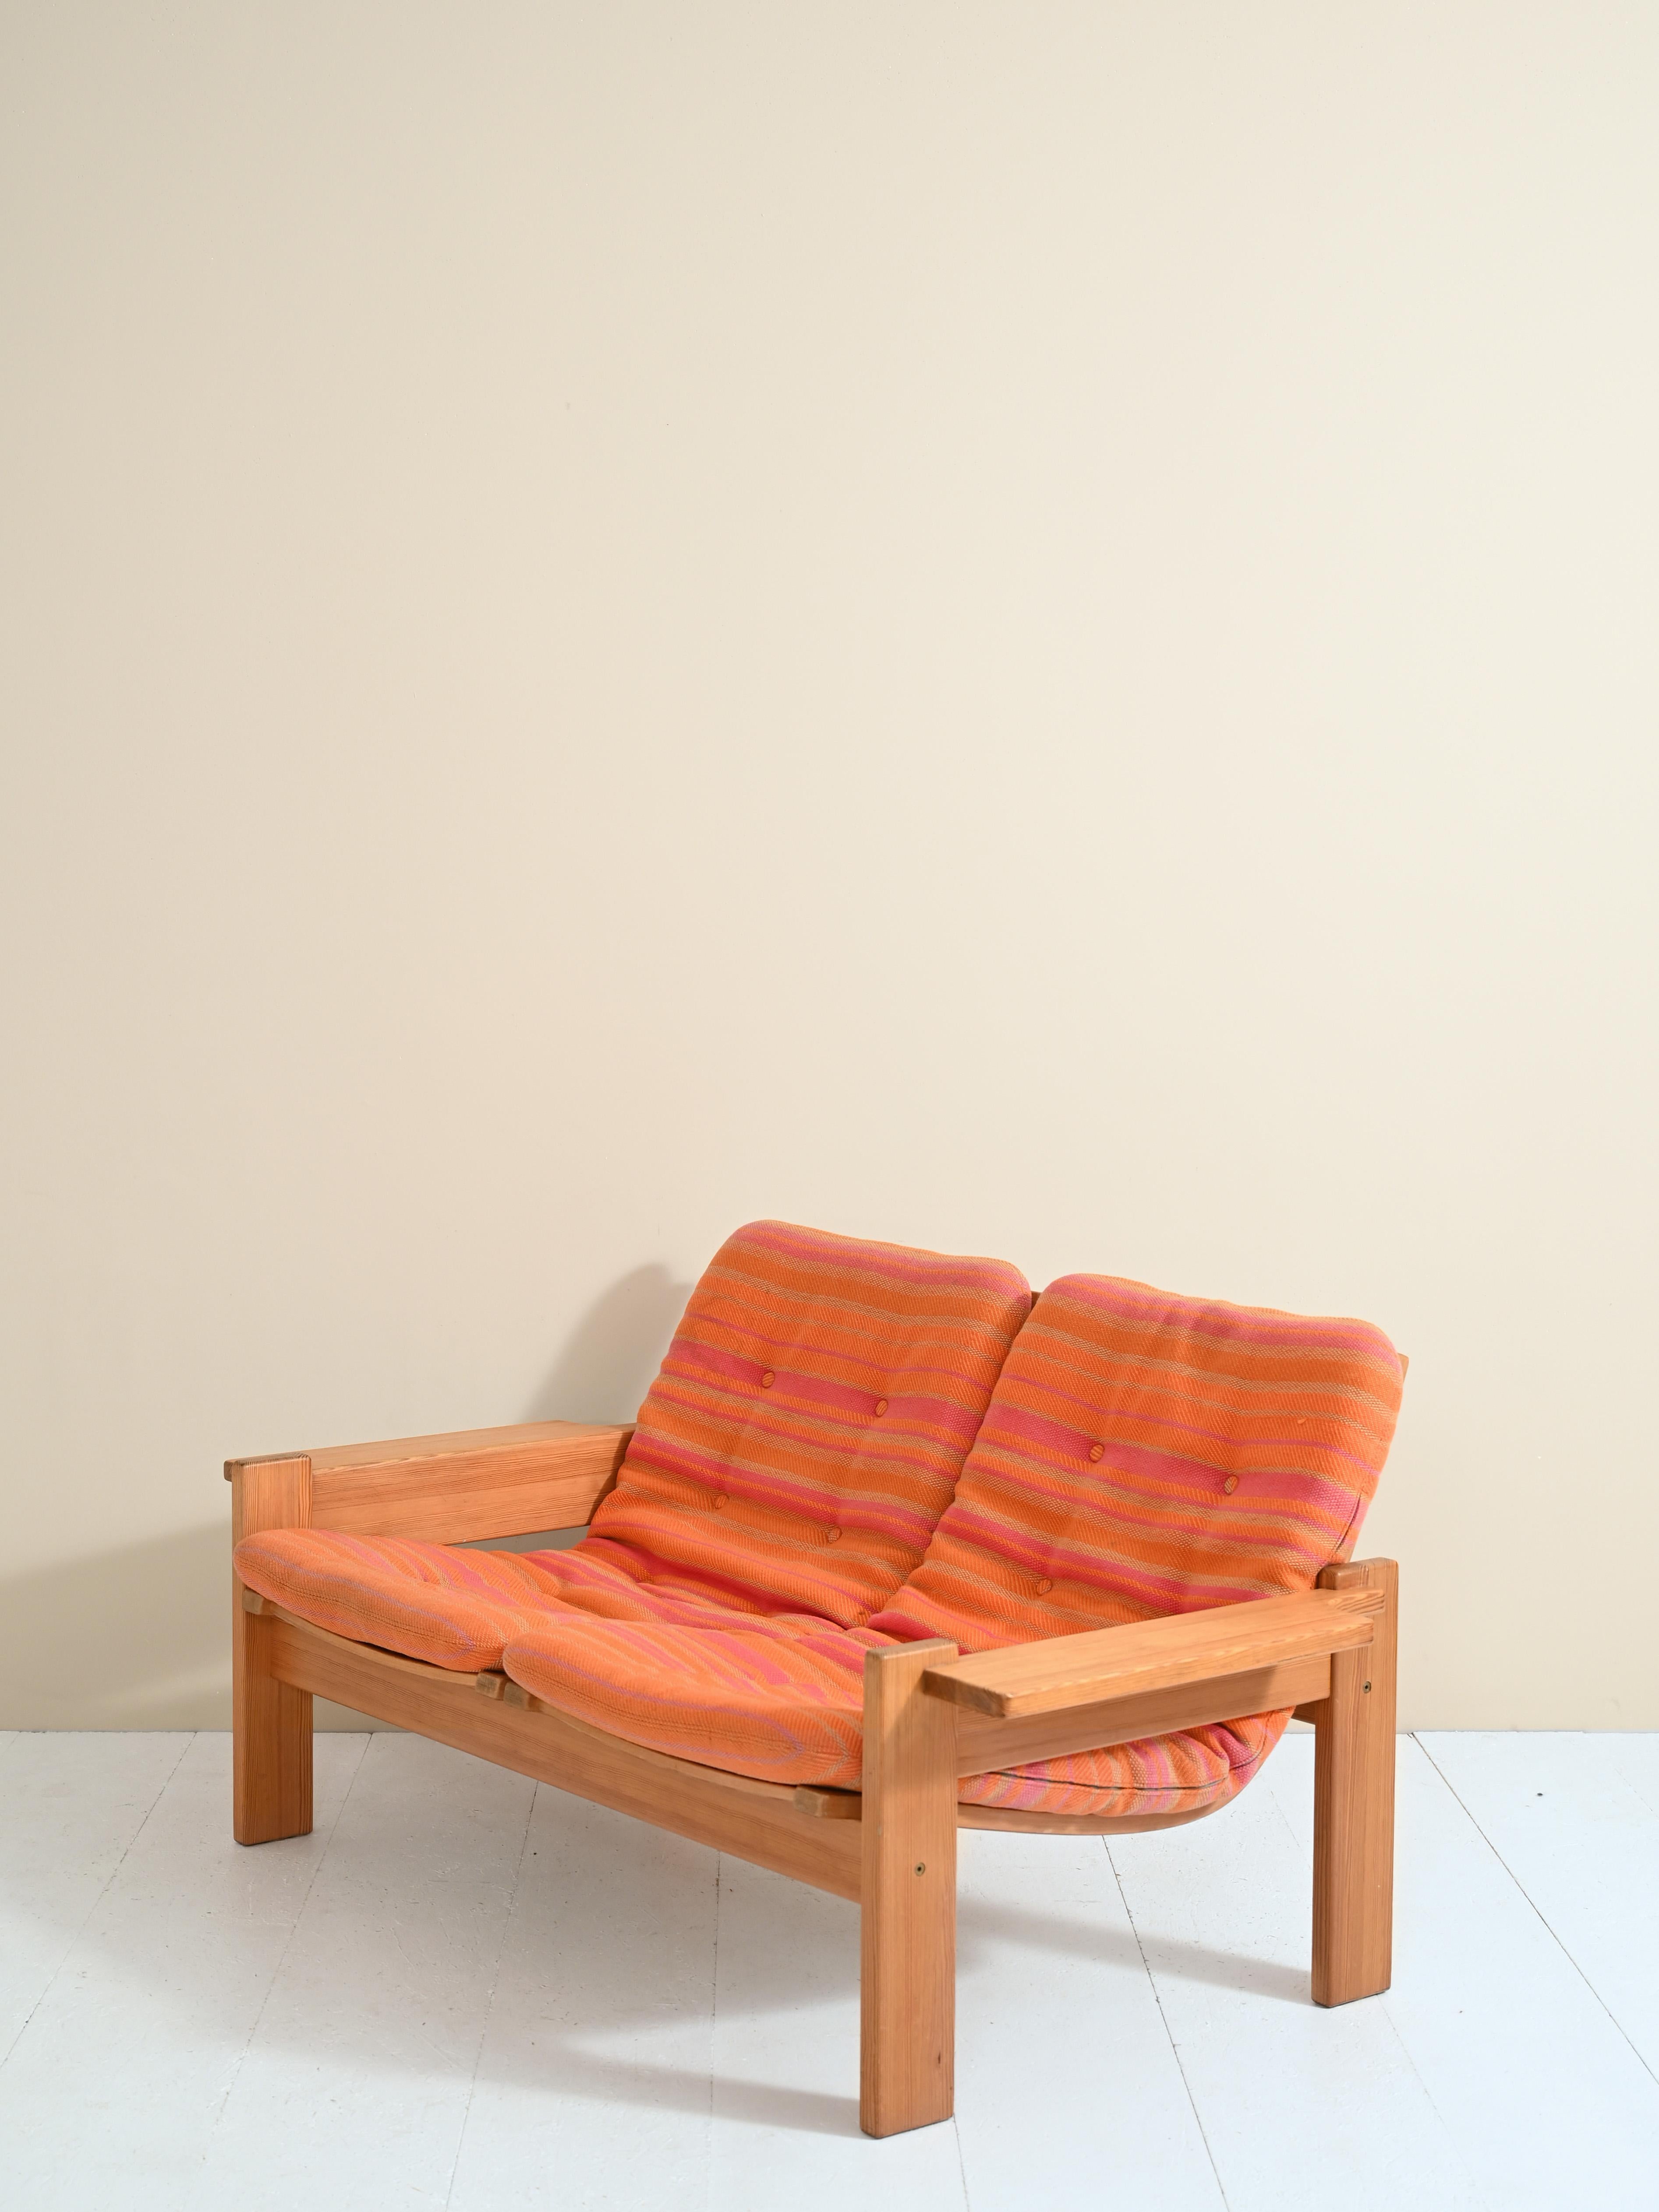 Zweisitziges Sofa, entworfen von Yngve Ekstom für Swedese in den 1970er Jahren.
Das Gestell ist aus hellem Kiefernholz und die Sitzfläche aus Stoff gefertigt. Die Kissen sind Originale aus der Zeit und haben abnehmbare Bezüge.

AC080.